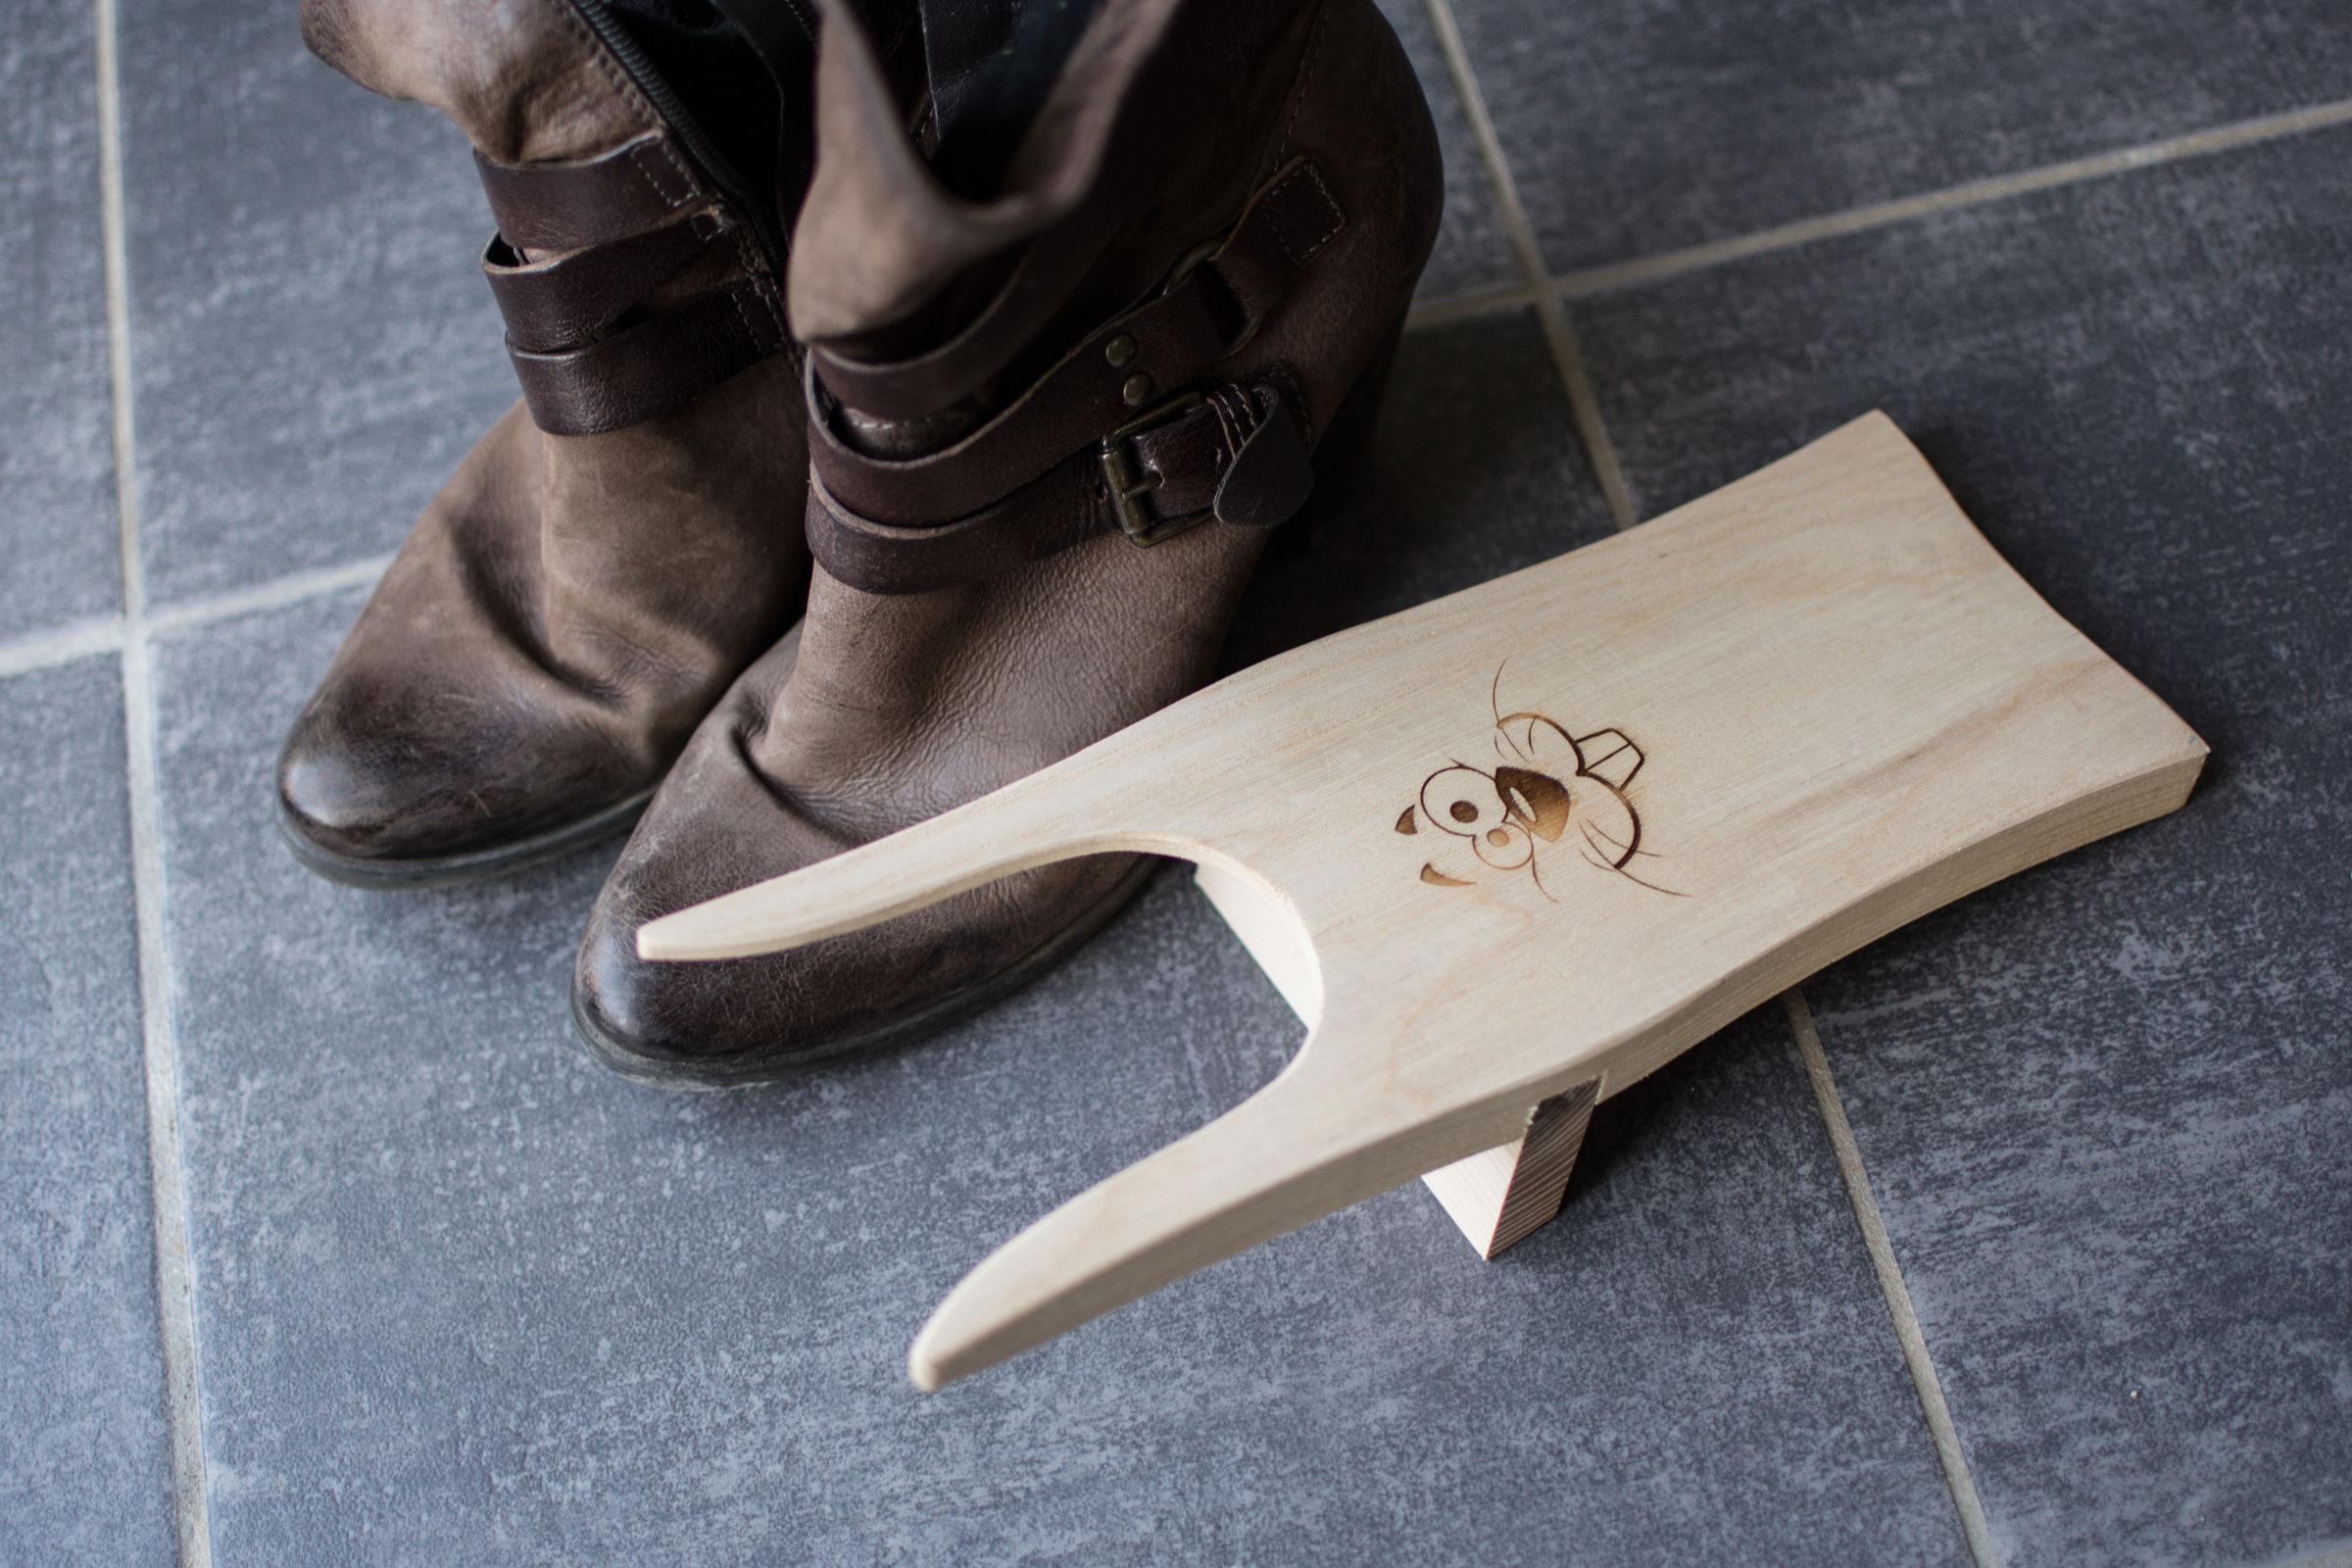 Tire-botte, aide chasseur ou chausse-pieds pratique en bois